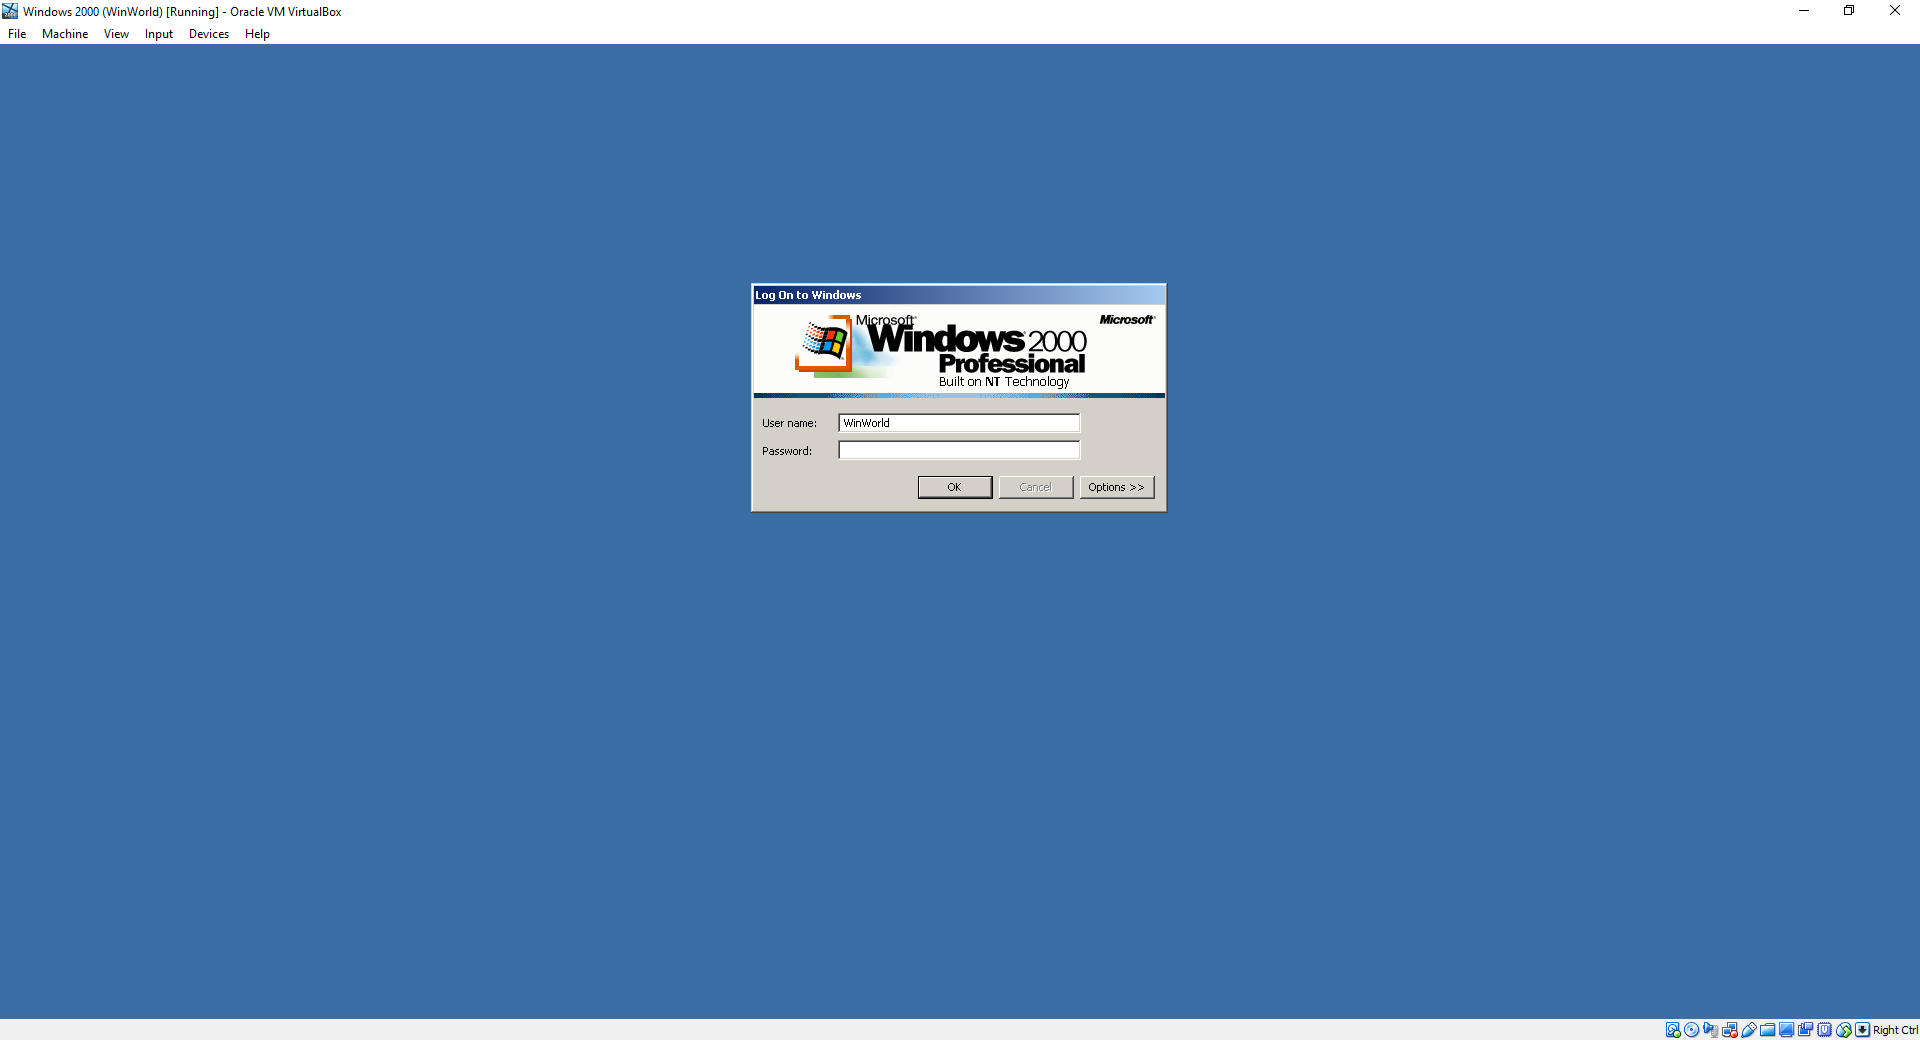 Игры виндовс 2000. Windows 2000 Интерфейс. Виндовс 2000 запуск. Интерфейс окна Windows 2000. Windows 2000 русская версия.